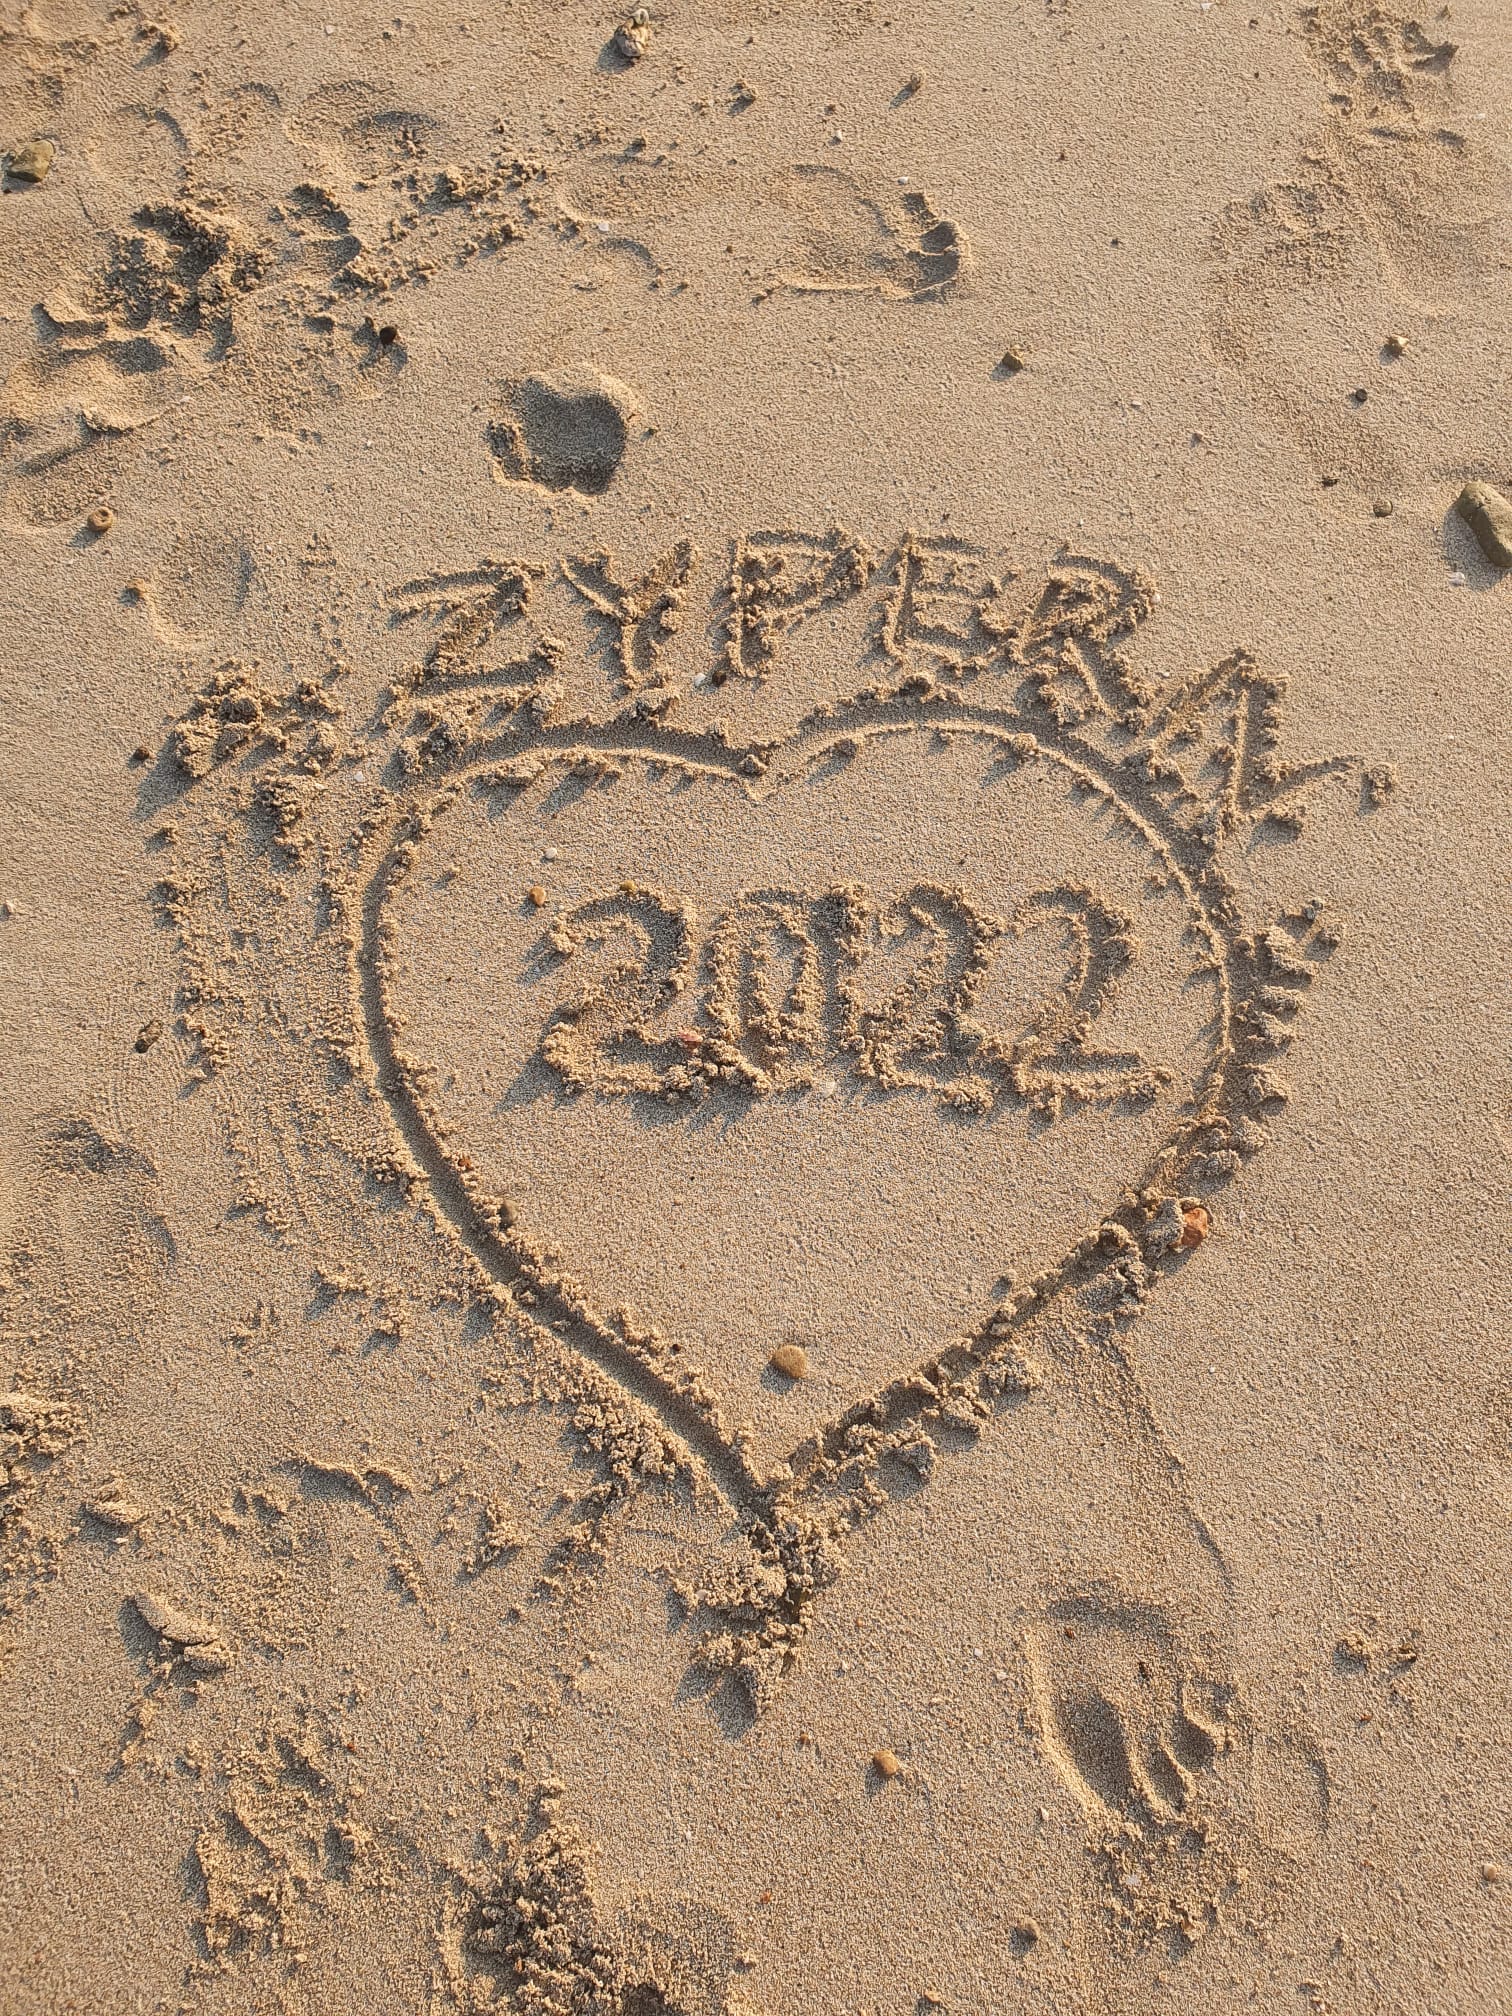 Herz im Sand Zypern 2022